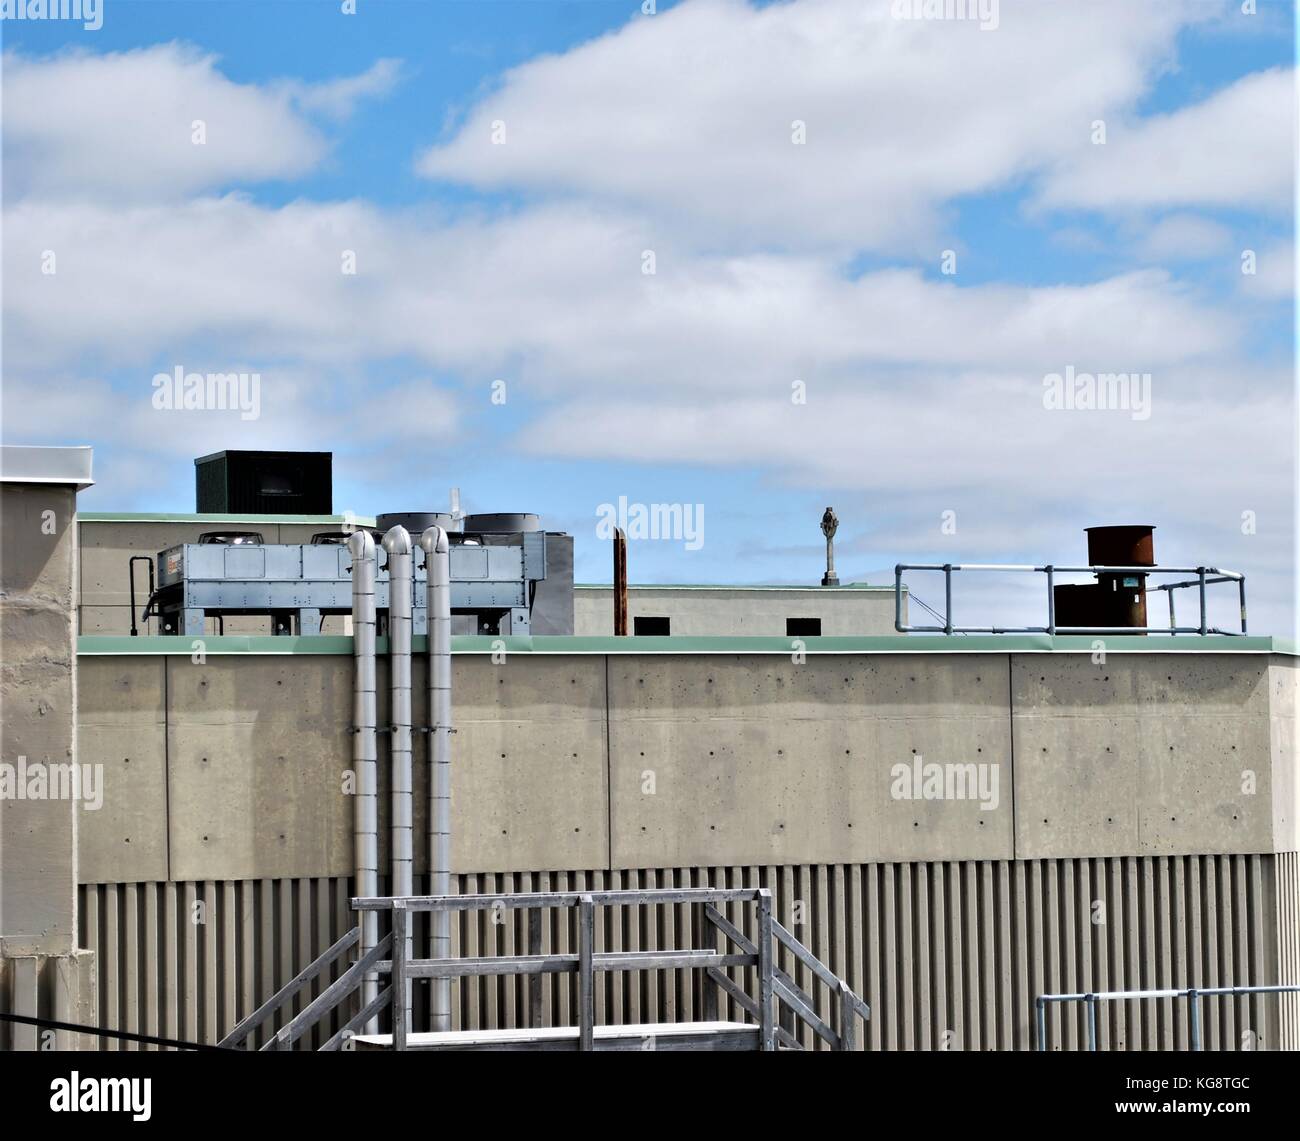 Roof top view di edilizia industriale, mostrando condotti aria condizionata e altre apparecchiature. Foto Stock